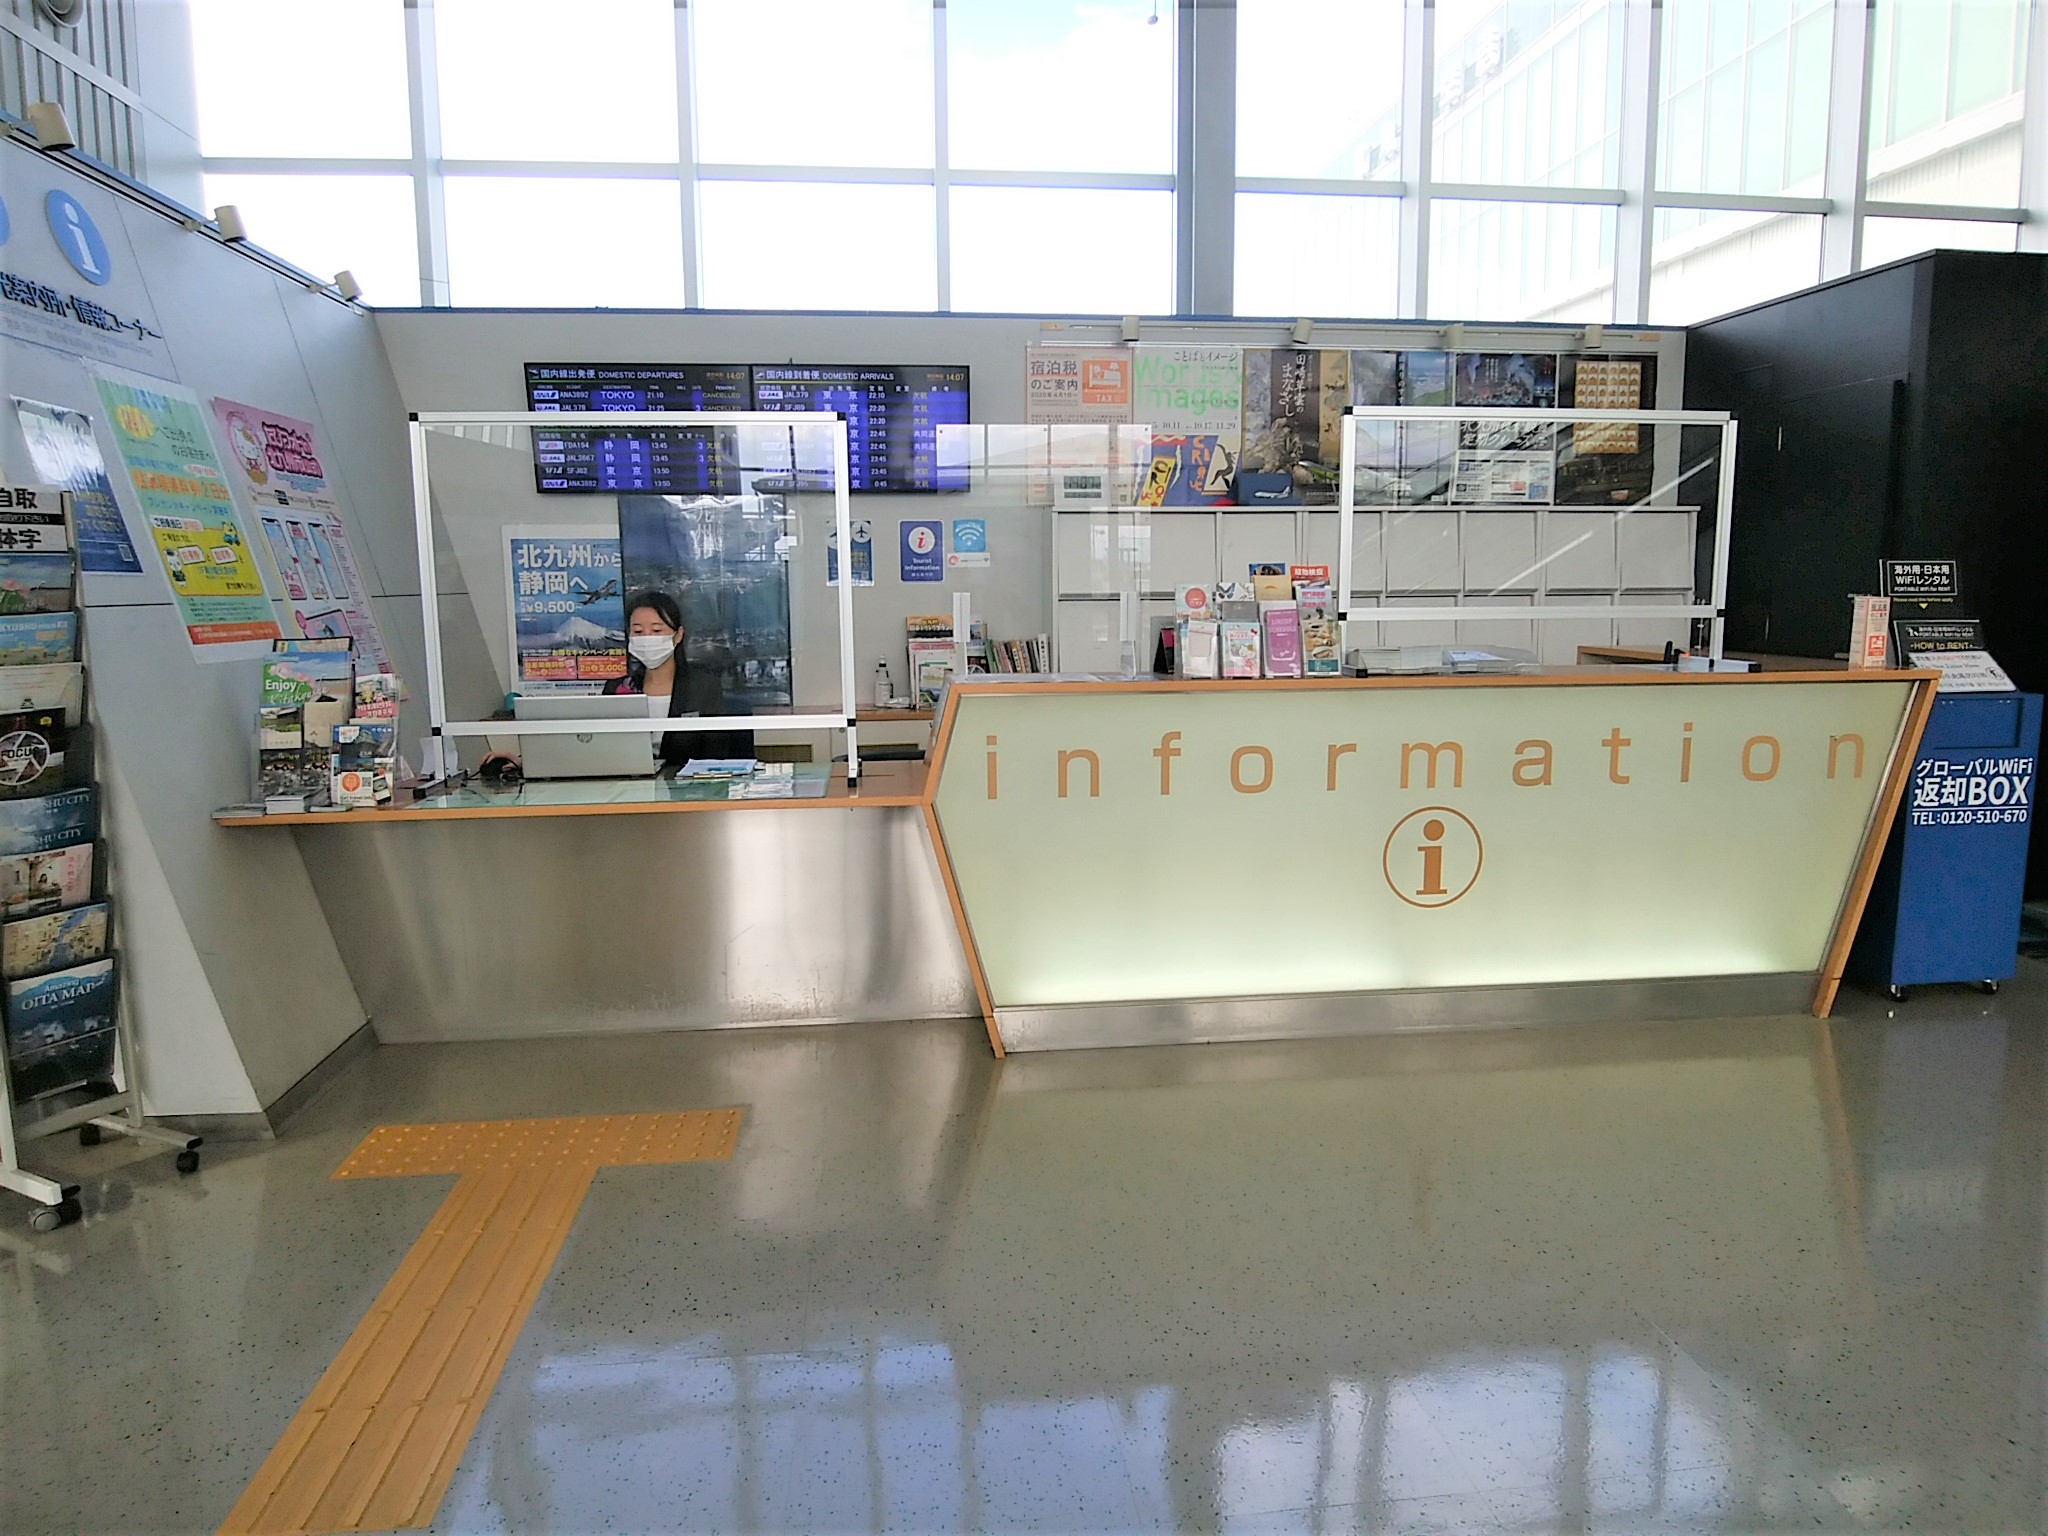 北九州机场一般旅游信息办公室